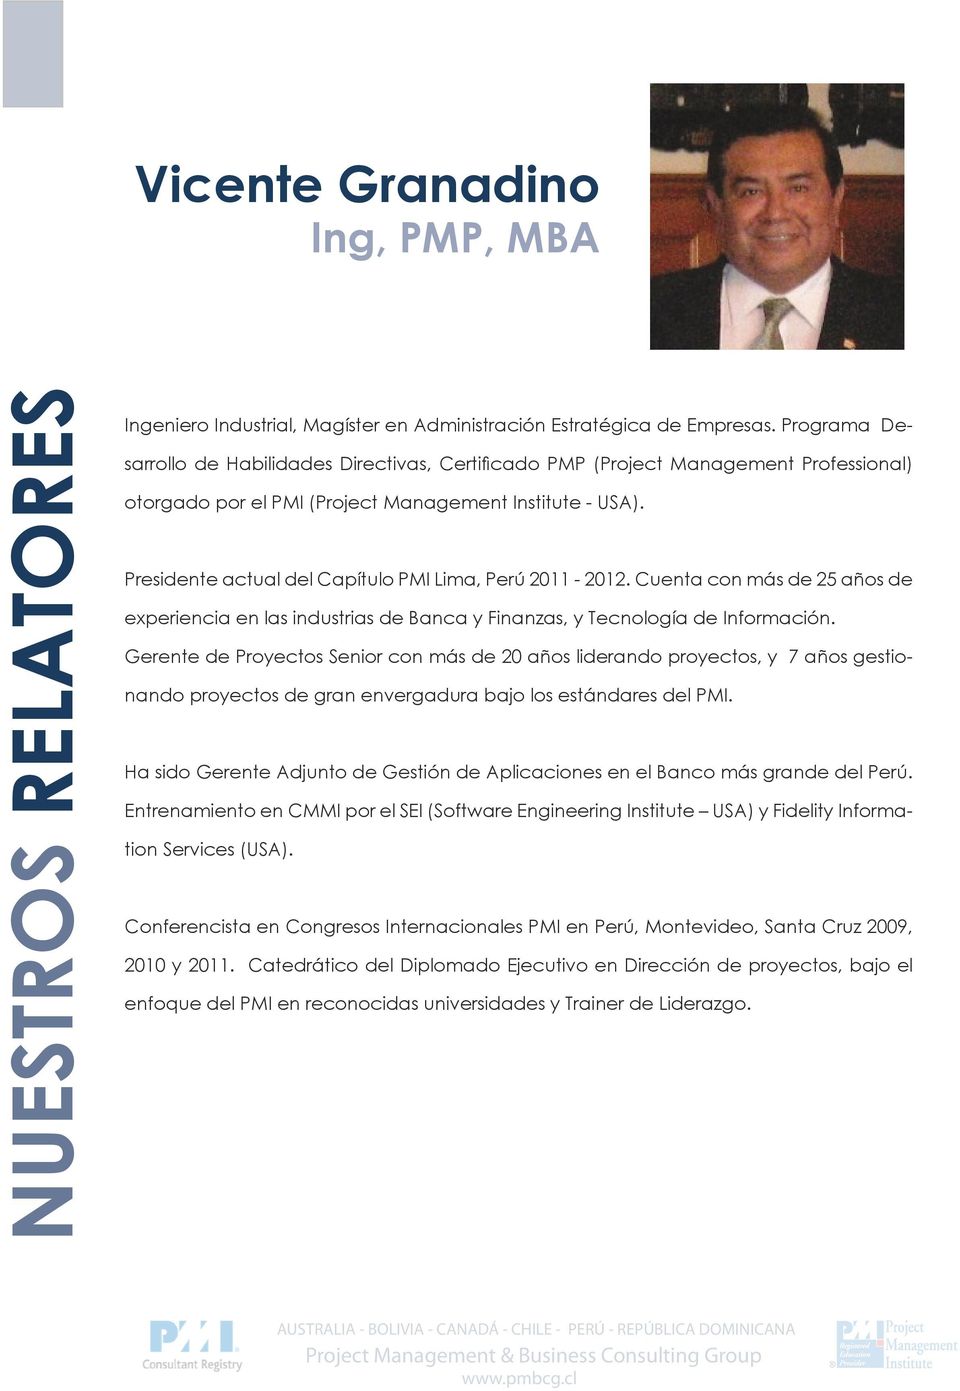 Presidente actual del Capítulo PMI Lima, Perú 2011-2012. Cuenta con más de 25 años de experiencia en las industrias de Banca y Finanzas, y Tecnología de Información.